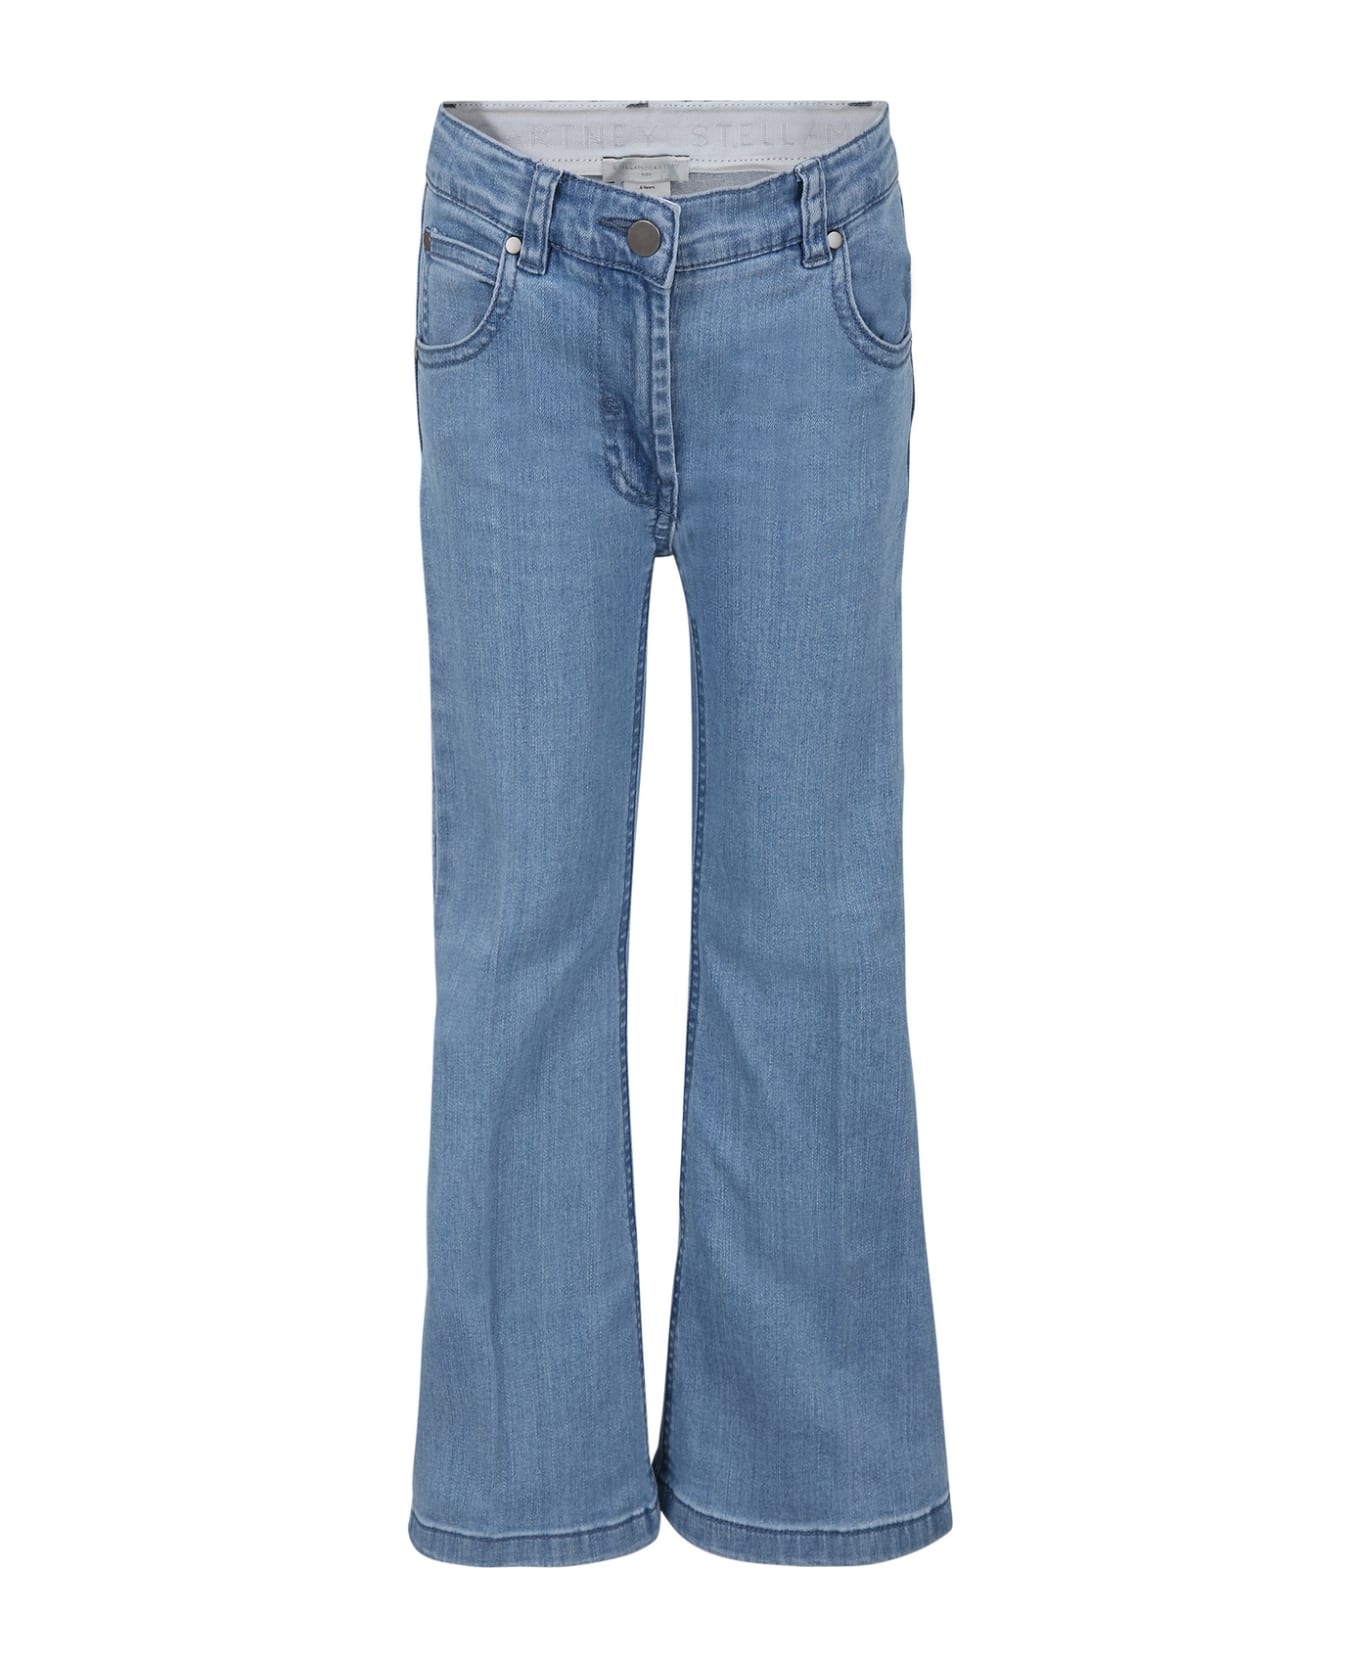 Stella McCartney Kids Light Blue Jeans For Girl With Logo - Denim